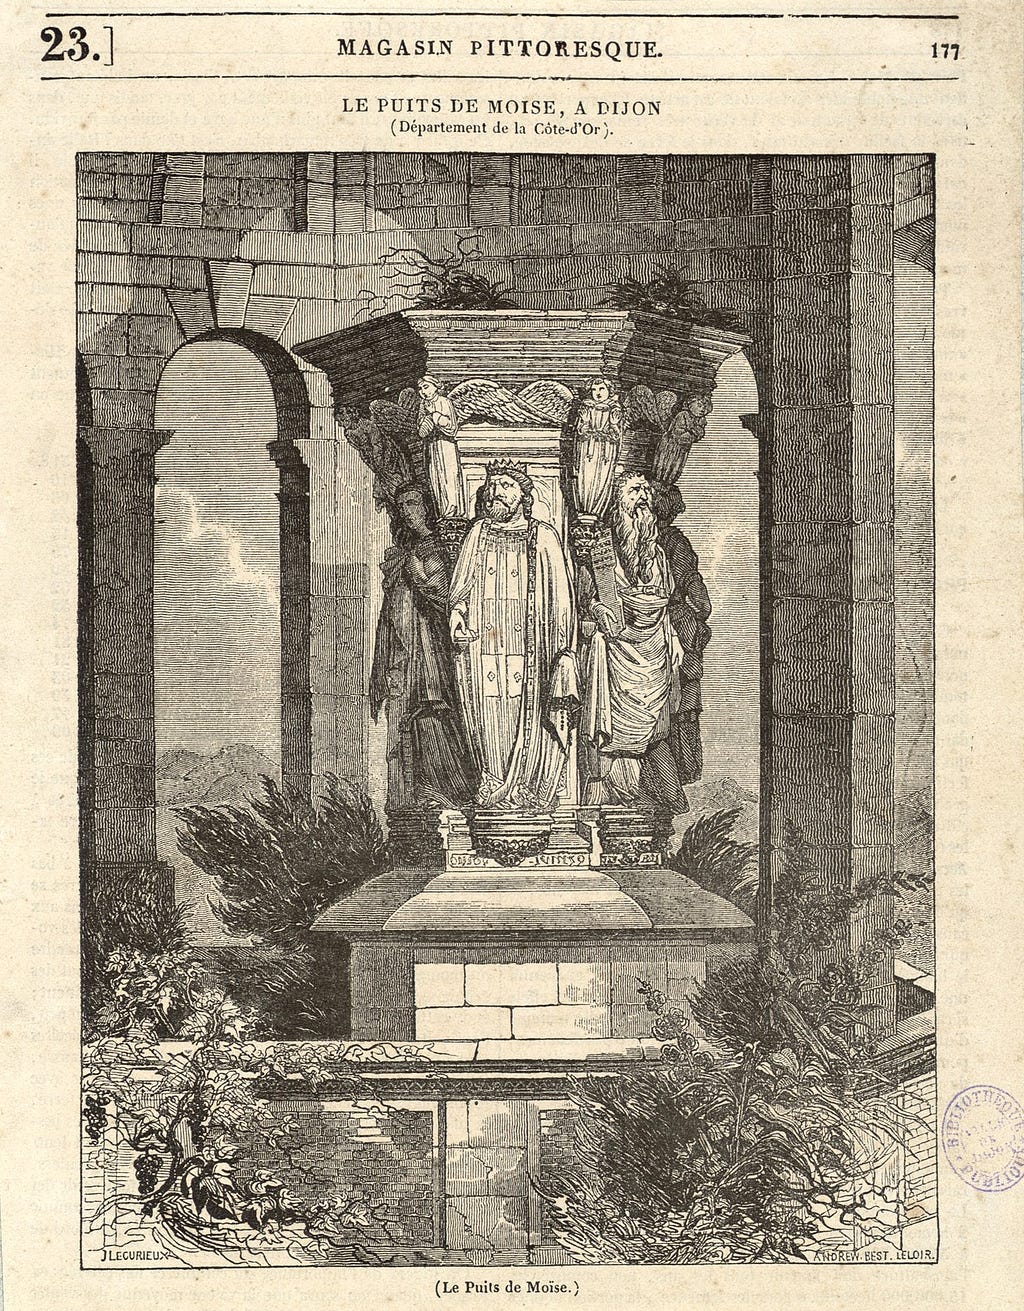 Jacques-Joseph Lecurieux, Andrew-Best-Leloir, Le Puits de Moïse Dijon, Le Magasin Pittoresque nummer 23, 1834, Bibliothèque Municipale de Dijon.